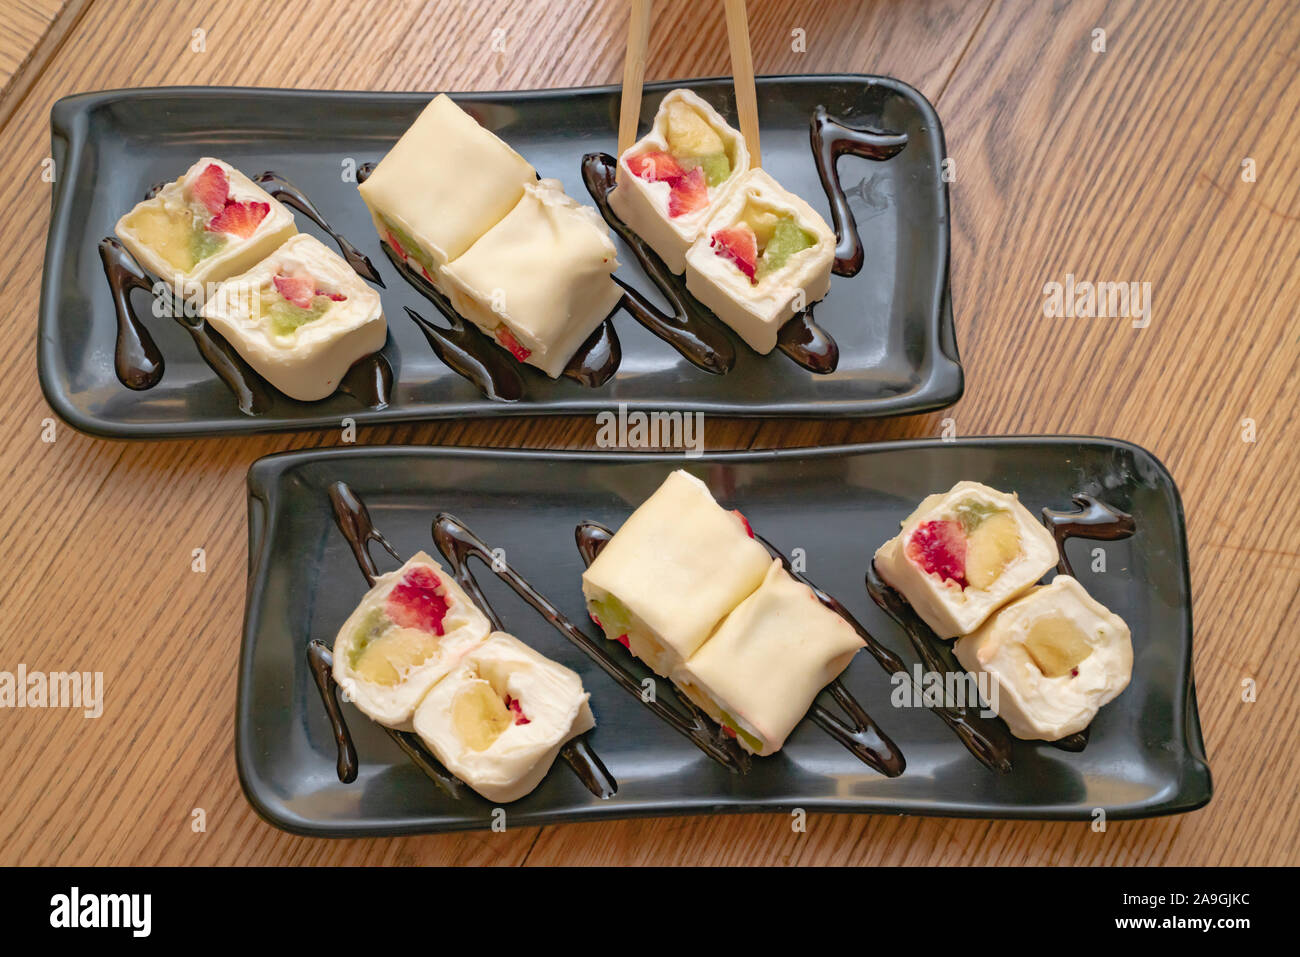 Rouleaux de minari dessert fraise, kiwi, banane et crème fromage enveloppé dans du riz fine pâtisserie est du vrai dianty. L'intérieur de divers fruits, crêpes à l'extérieur Banque D'Images